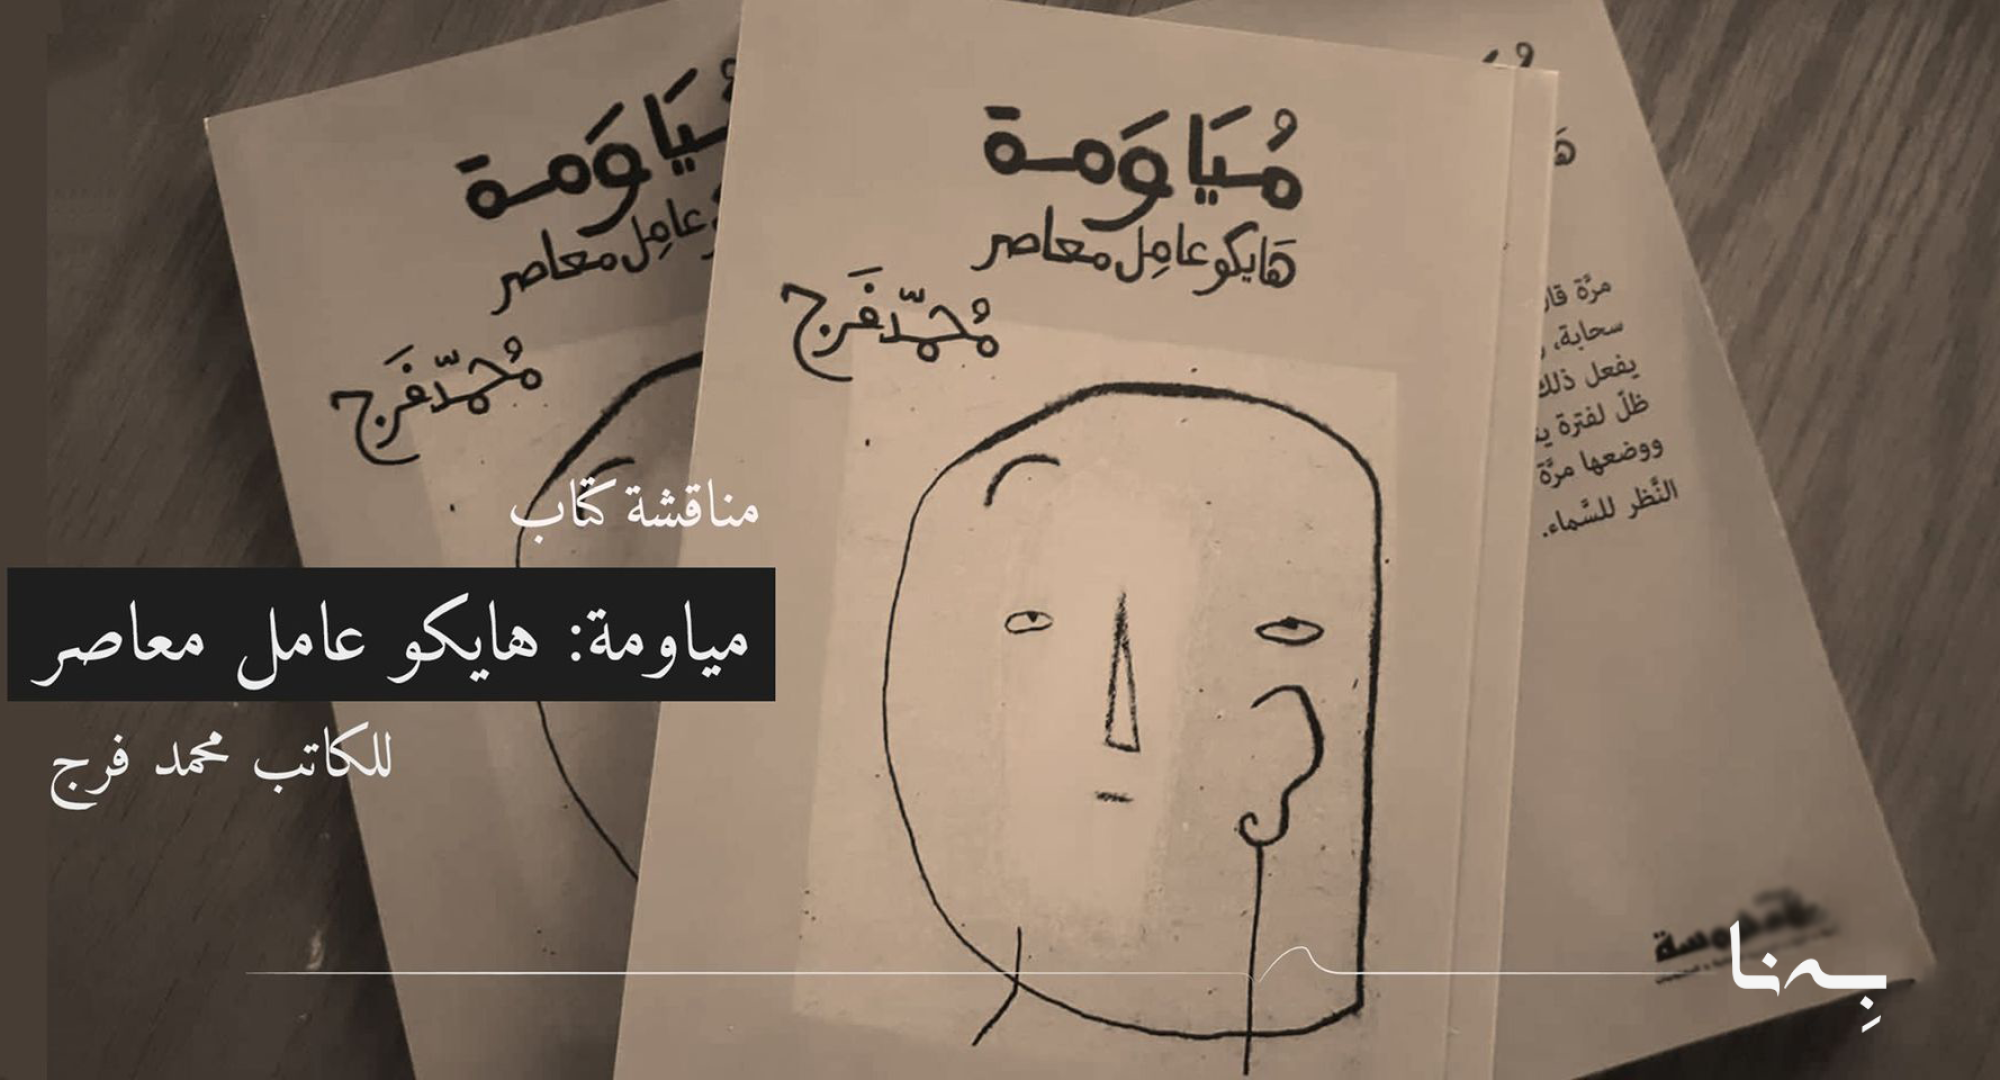 مناقشة كتاب "مياومة- هايكو عامل معاصر" للكاتب محمد فرج